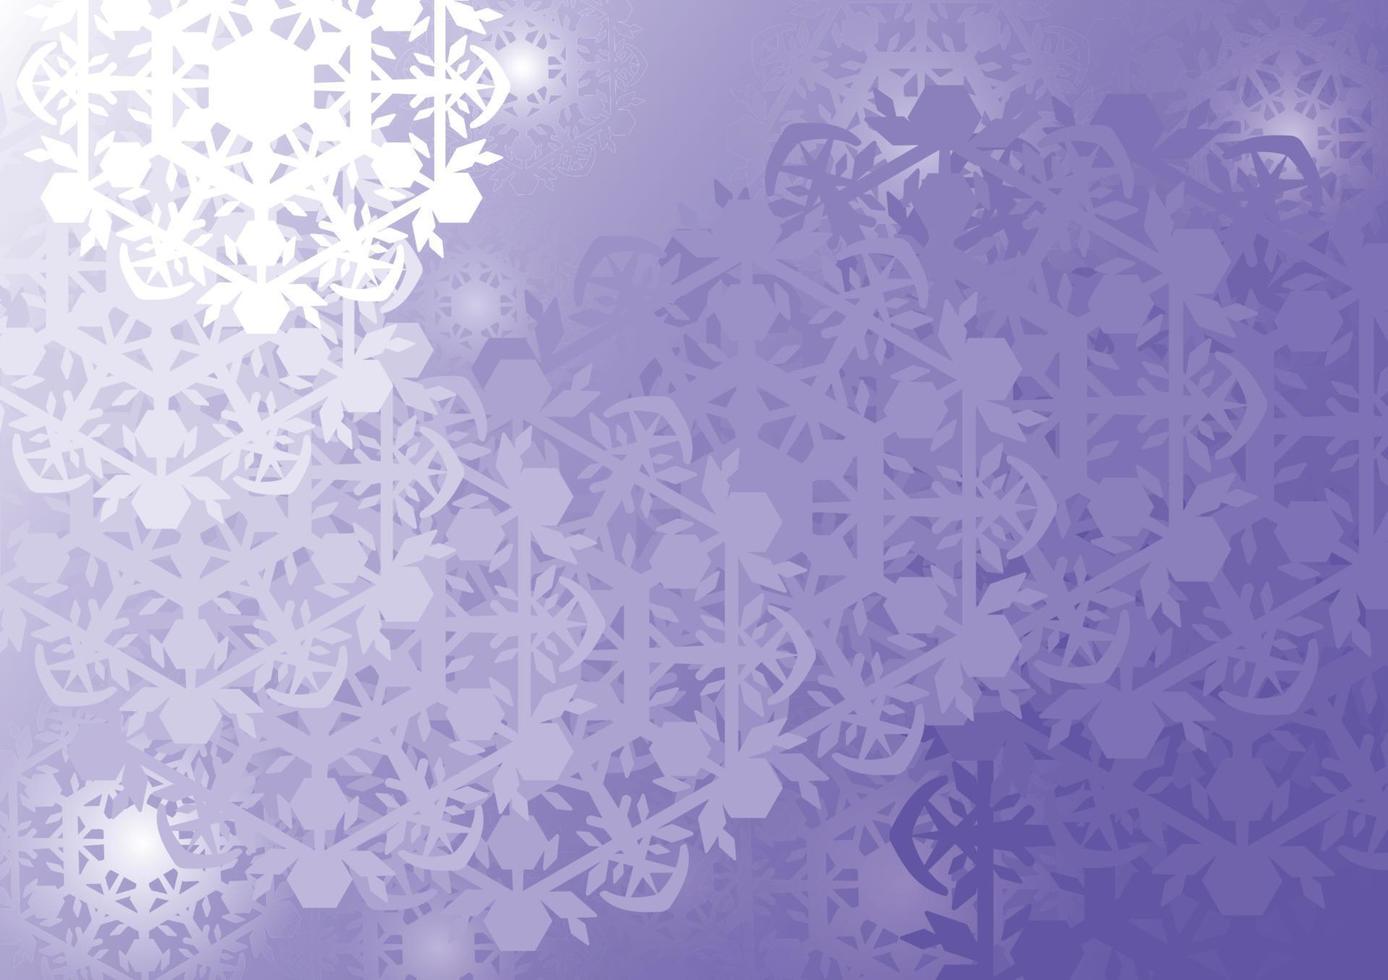 arrière-plan abstrait, couche de flocons de neige découpée en papier. illustration vectorielle. vecteur